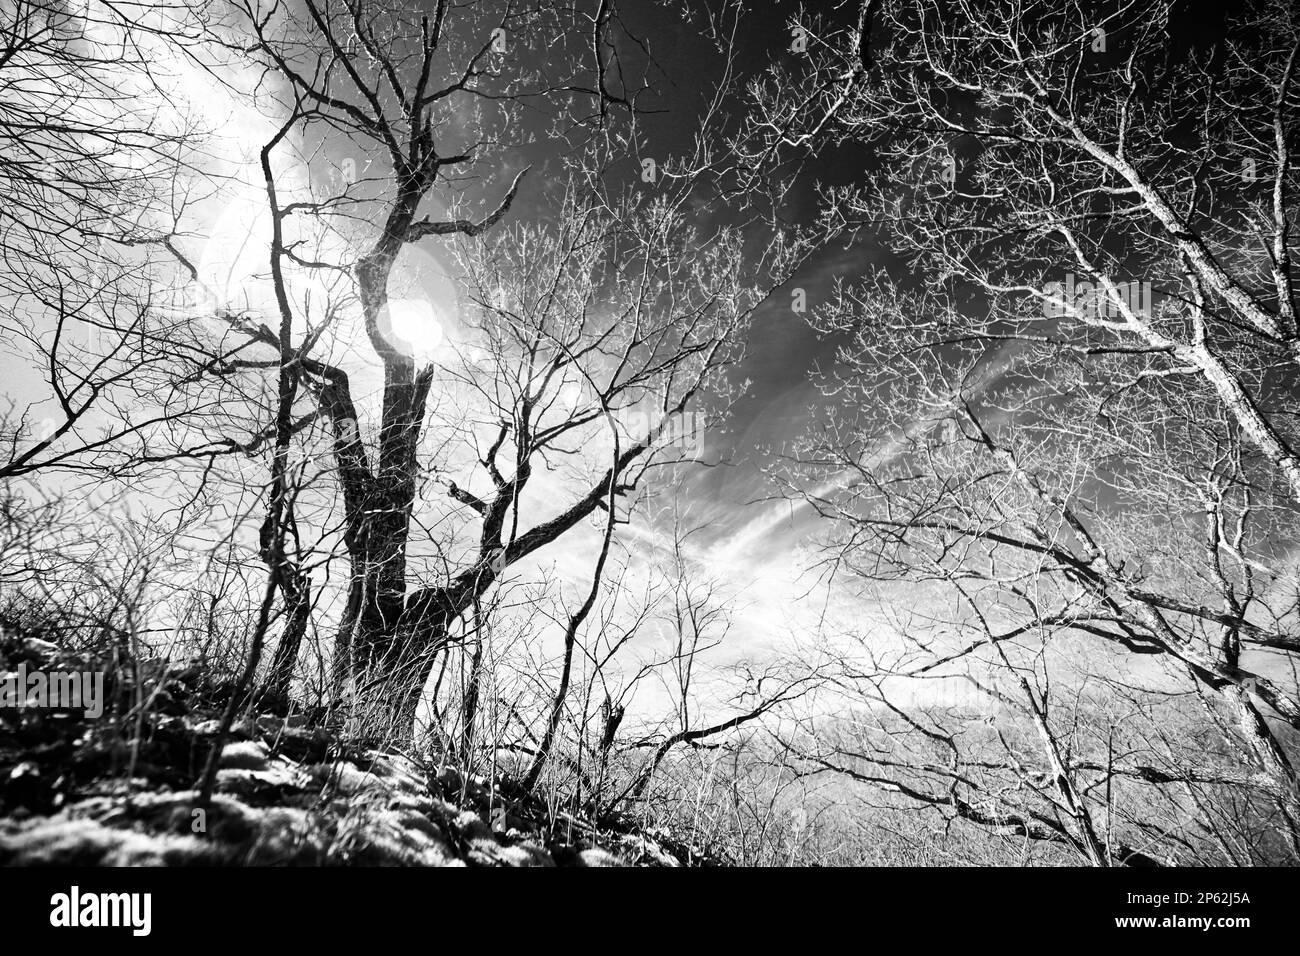 Image infrarouge noir et blanc de certains arbres dormants contre un ciel contrasté à la fin de l'hiver. L'image évoque le chaos et la ramification des pensées. Banque D'Images